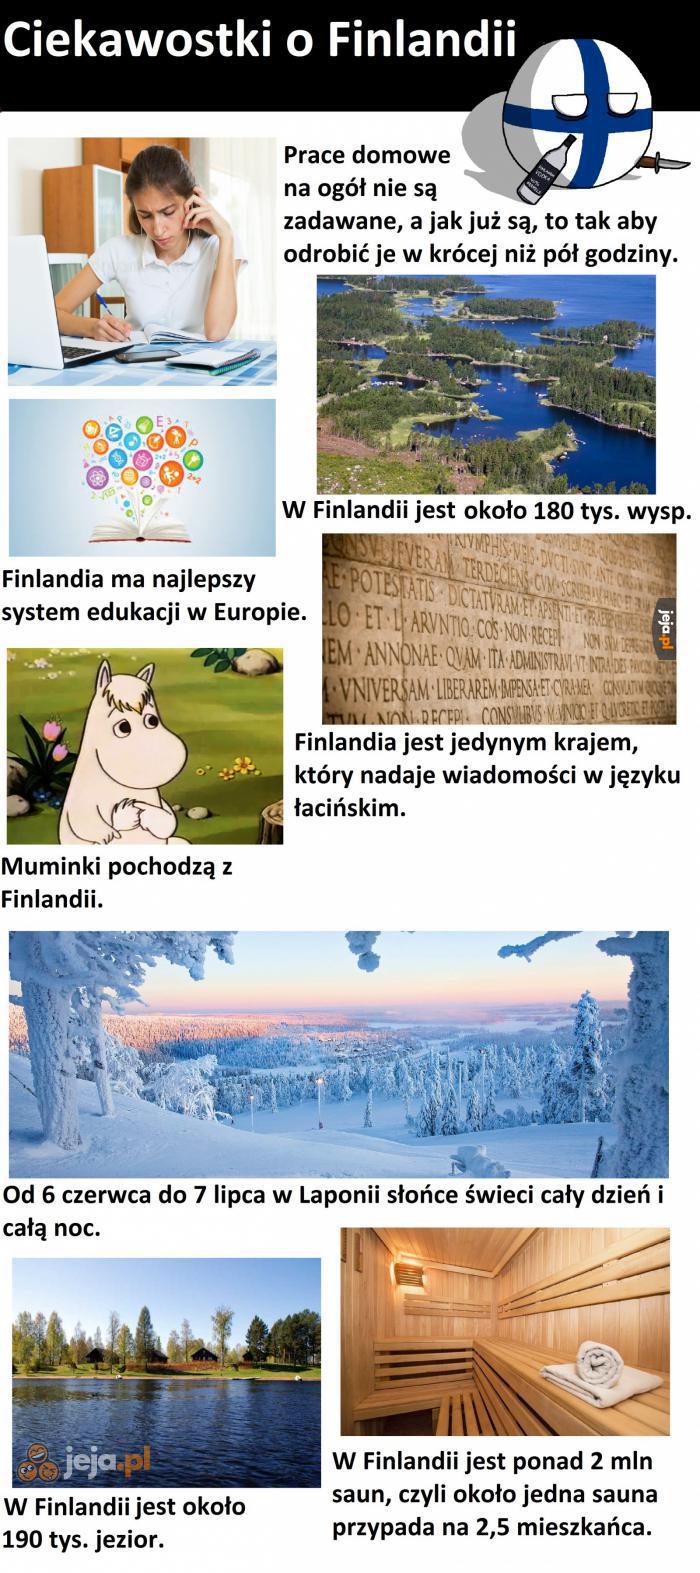 Ciekawostki o Finlandii